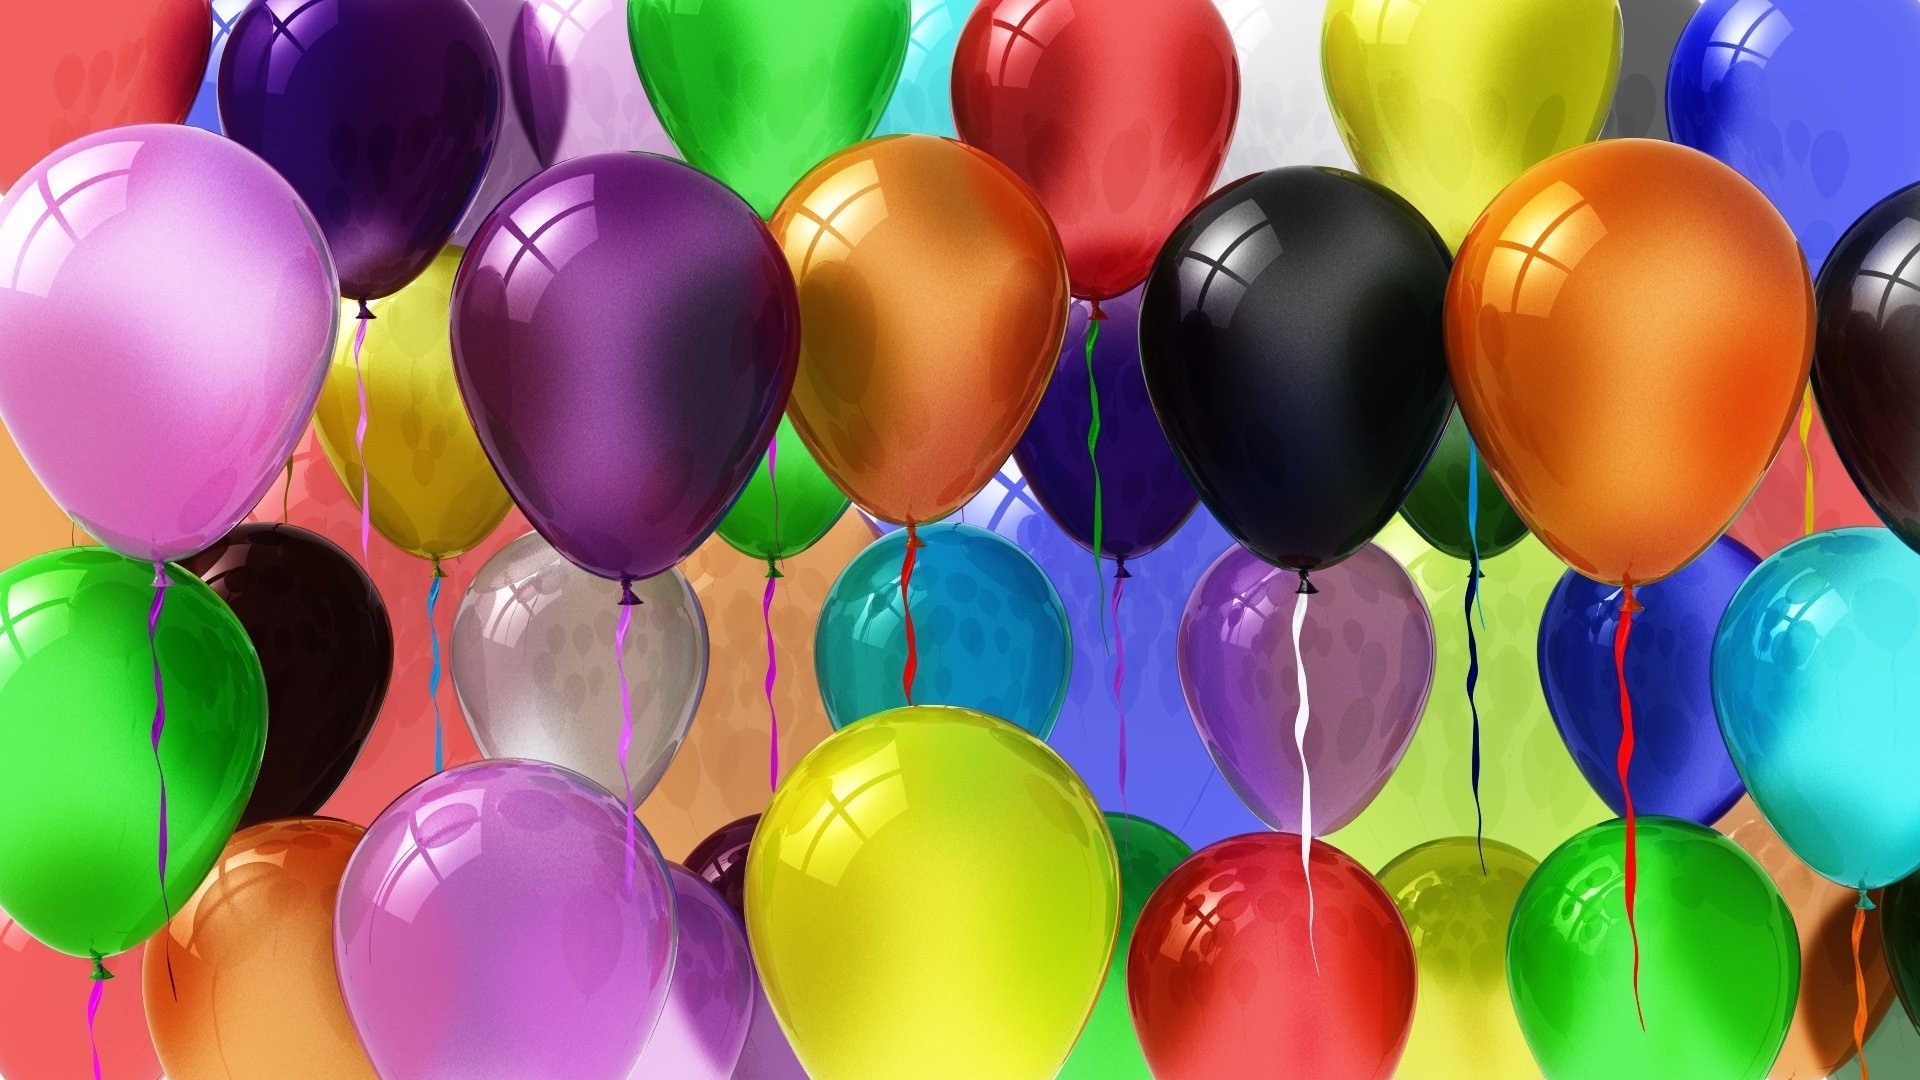 праздничные атрибуты воздушный шар гелий цвет яркий круглый светит пестрый удовольствие рабочего стола праздник день рождения иллюстрация украшения пластик участник дизайн пасха мяч